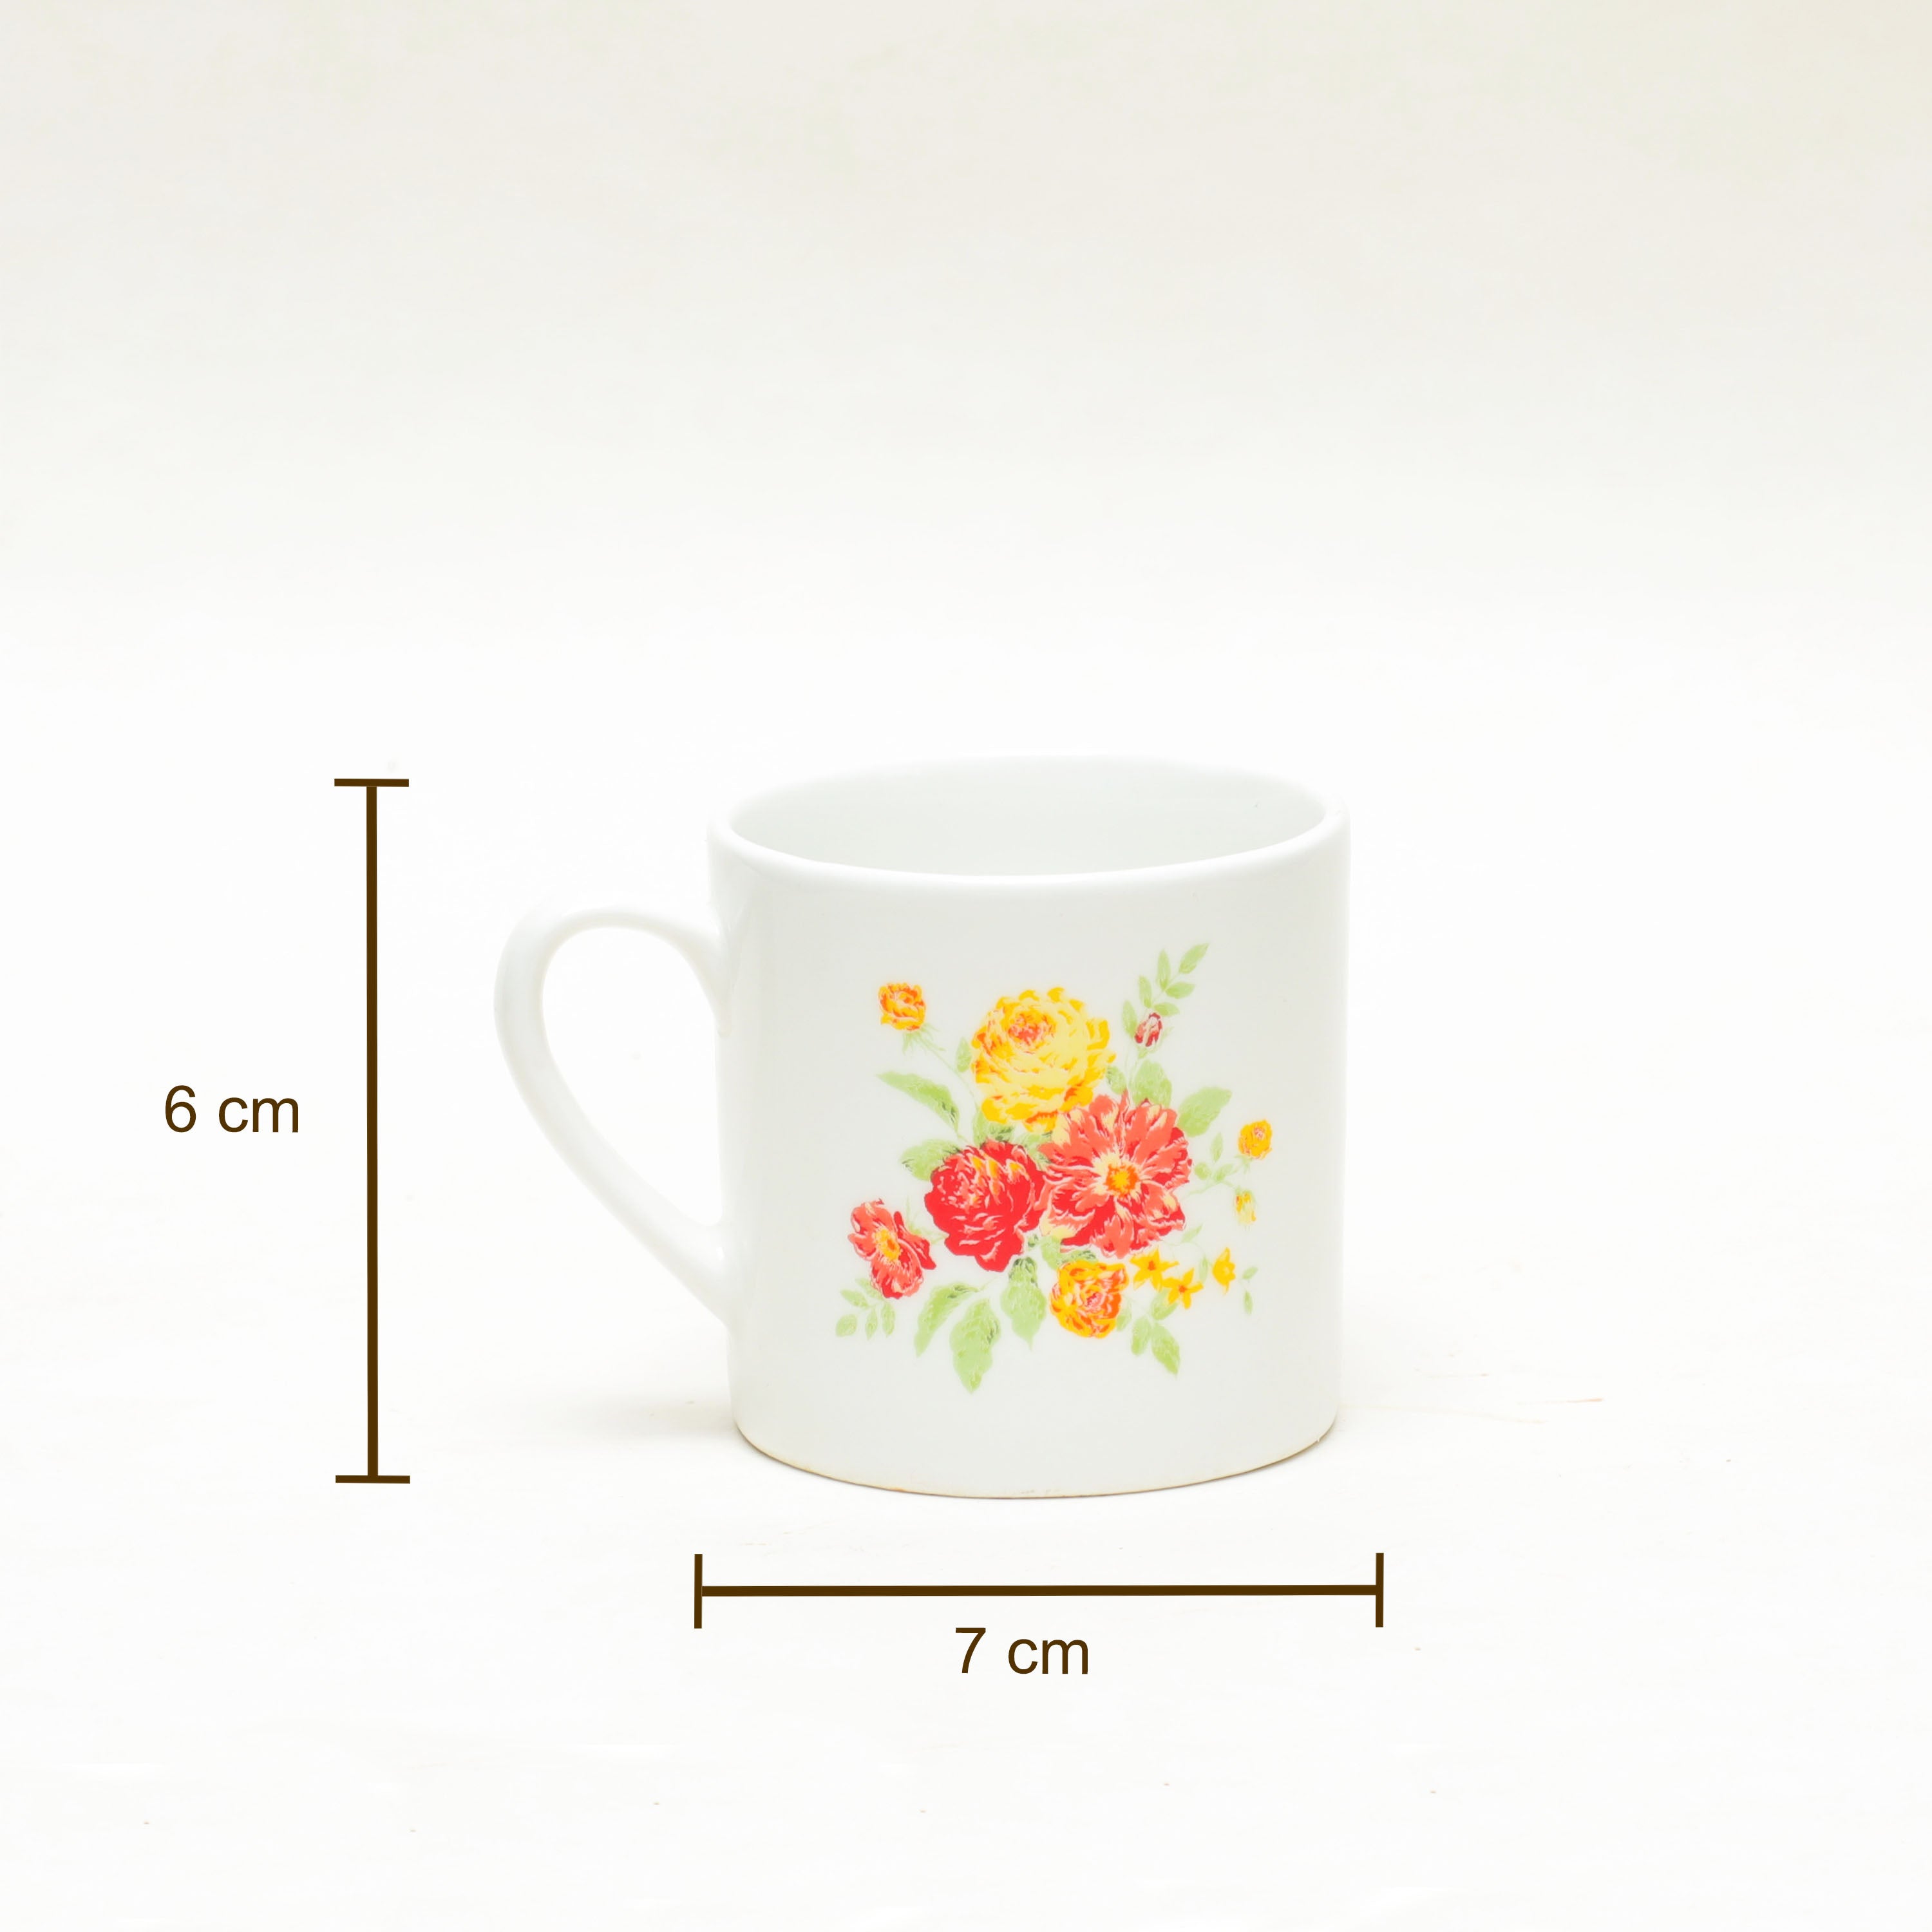 Coffee Mug With Print - Floral Design Mug For Wedding - White Mug 